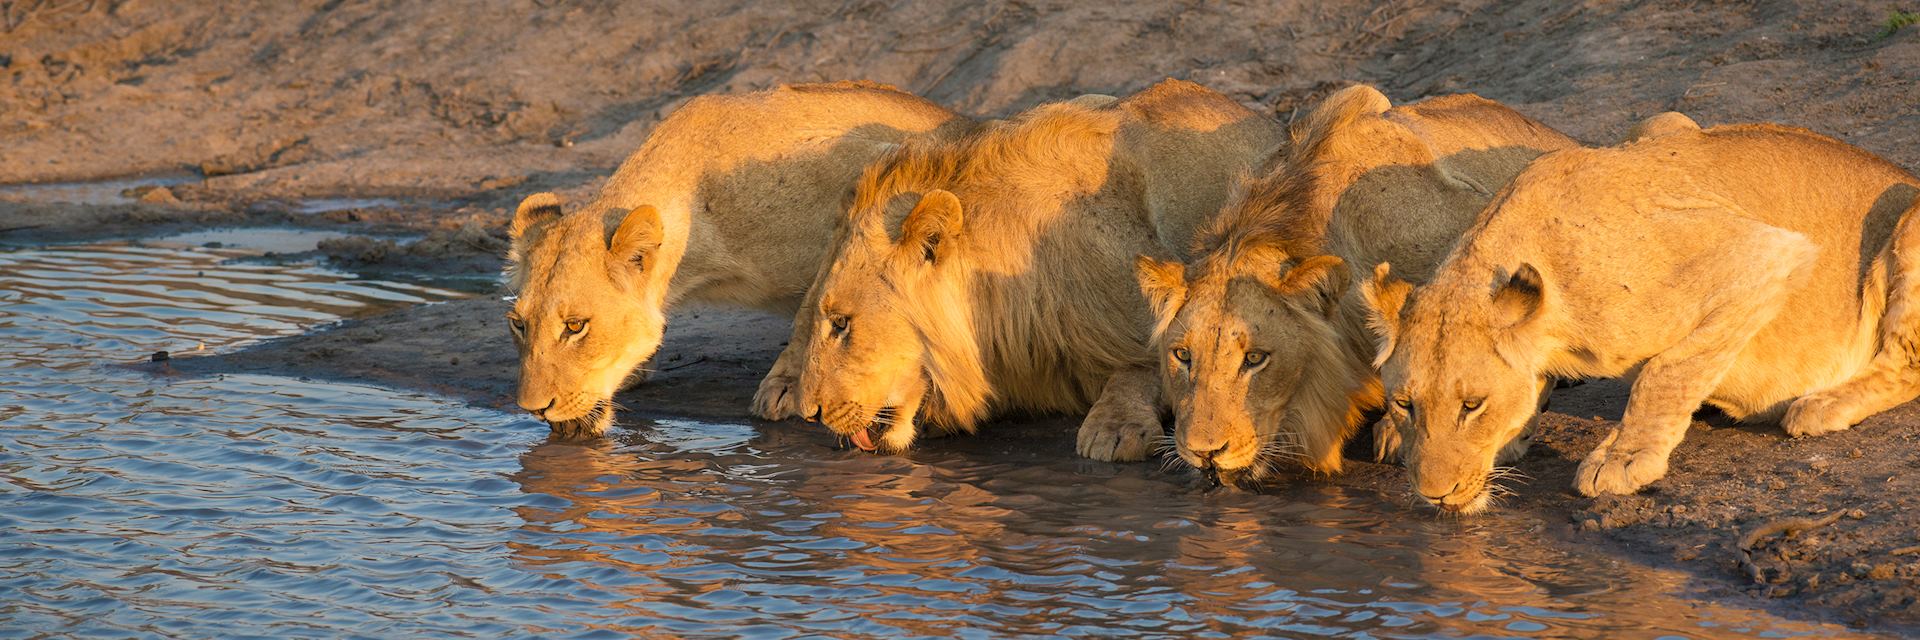 Lion in Sabi Sands Game Reserve